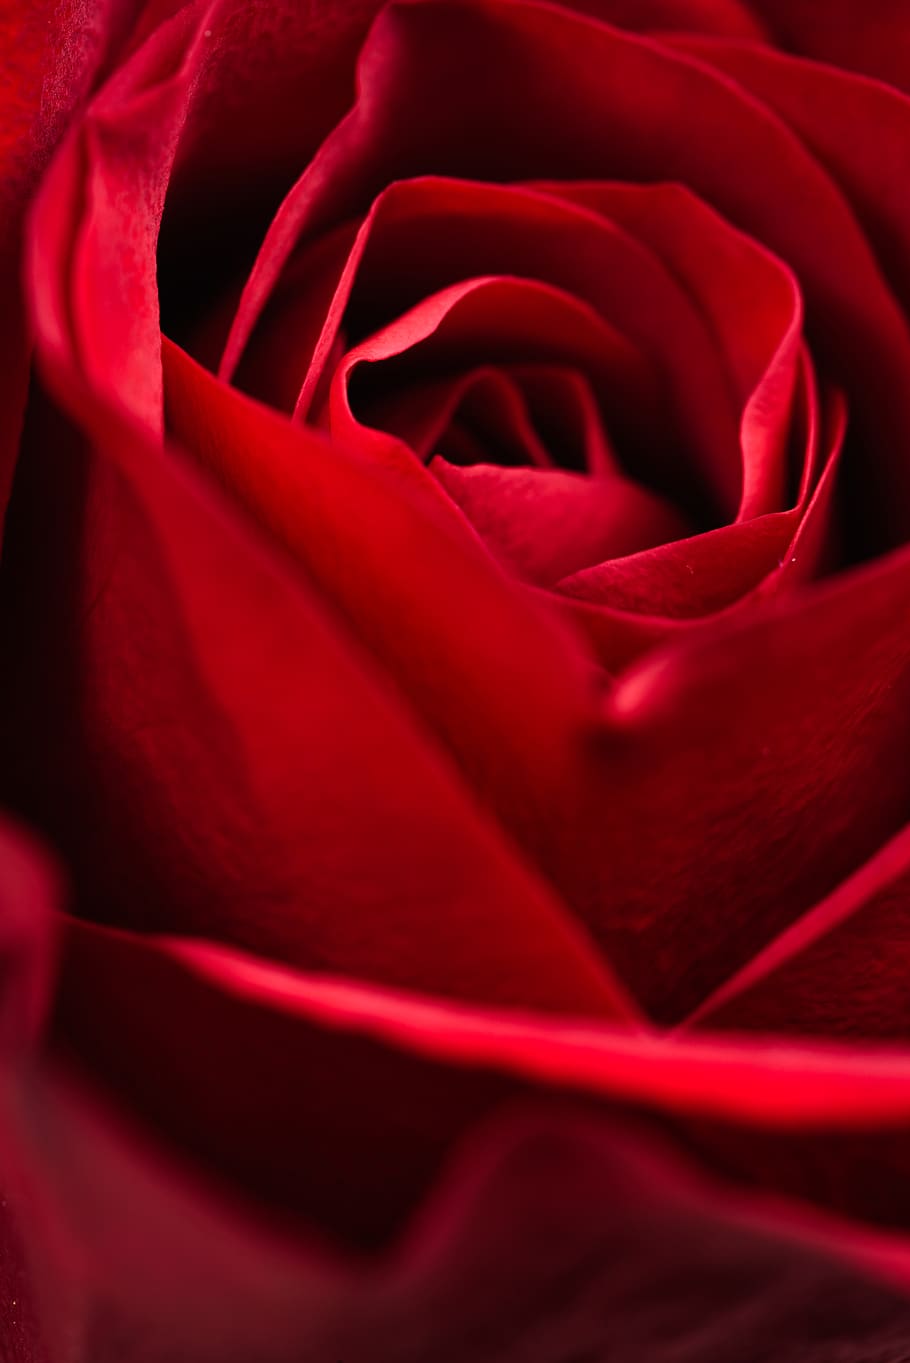 merah, mawar, makro, background mawar, mekar, mawar merah, alam, romantis, merapatkan, kelopak mawar